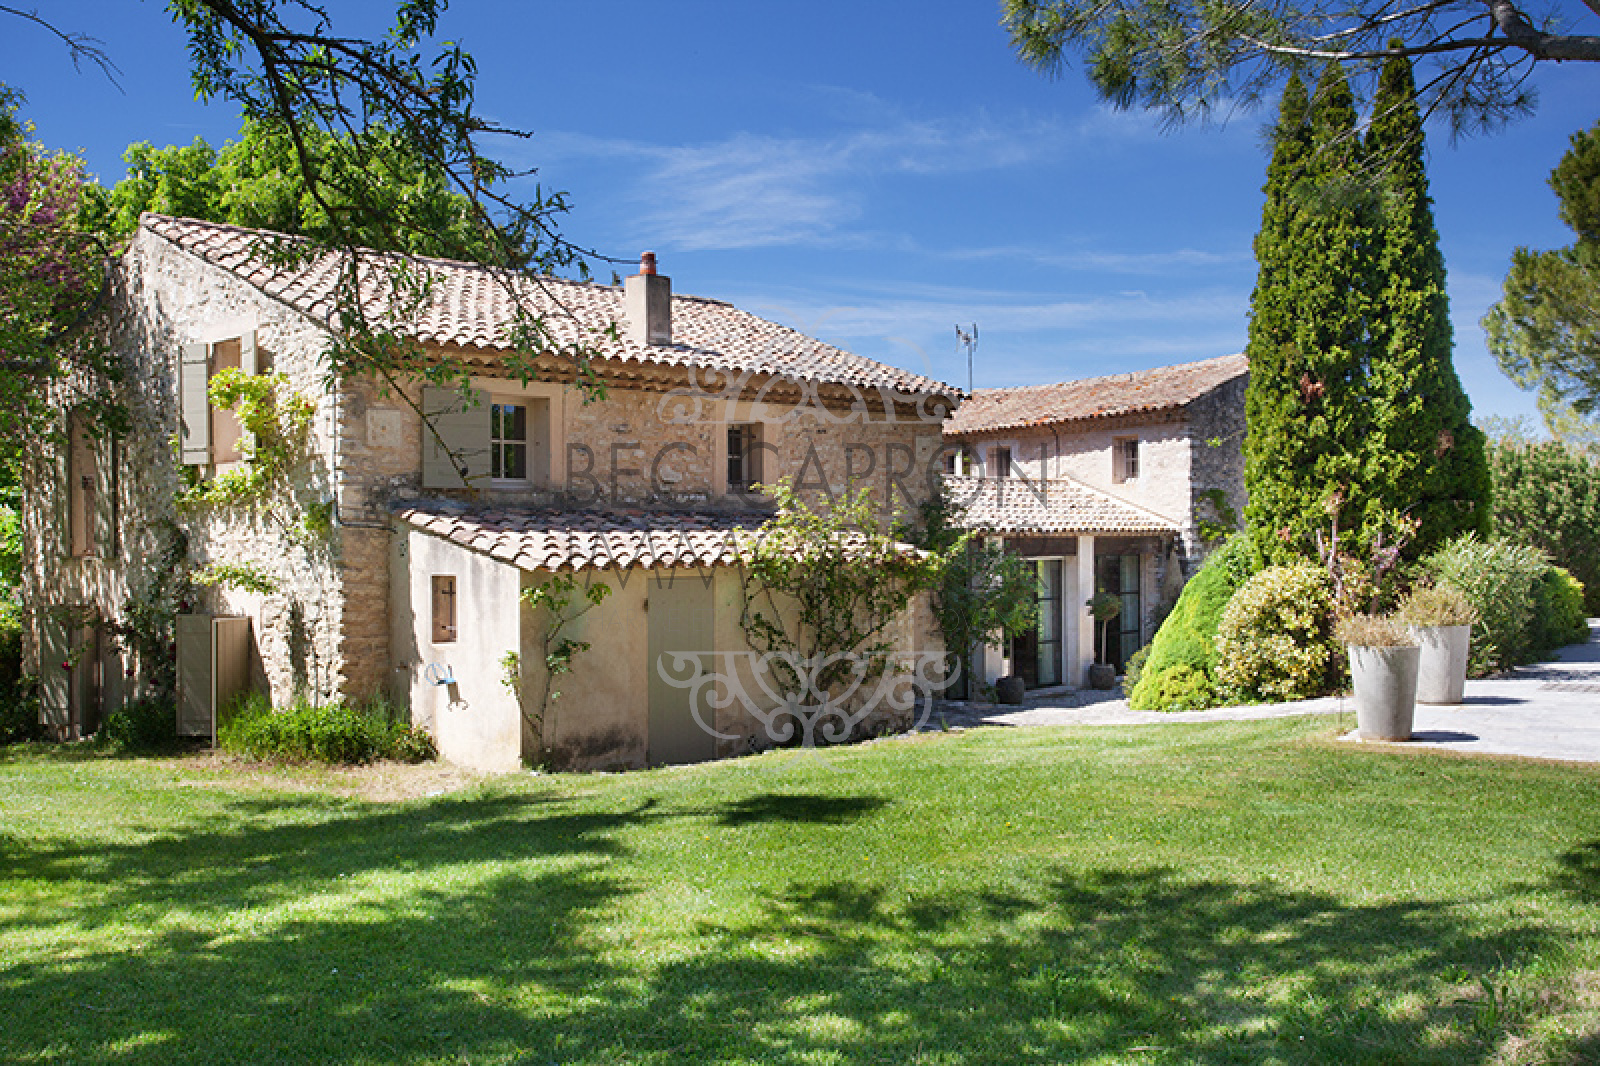 Image_8, Maisons (maison, propriÃ©tÃ©, villa, Mas,bastide, maison de village), Aix-en-Provence, ref :948 VM